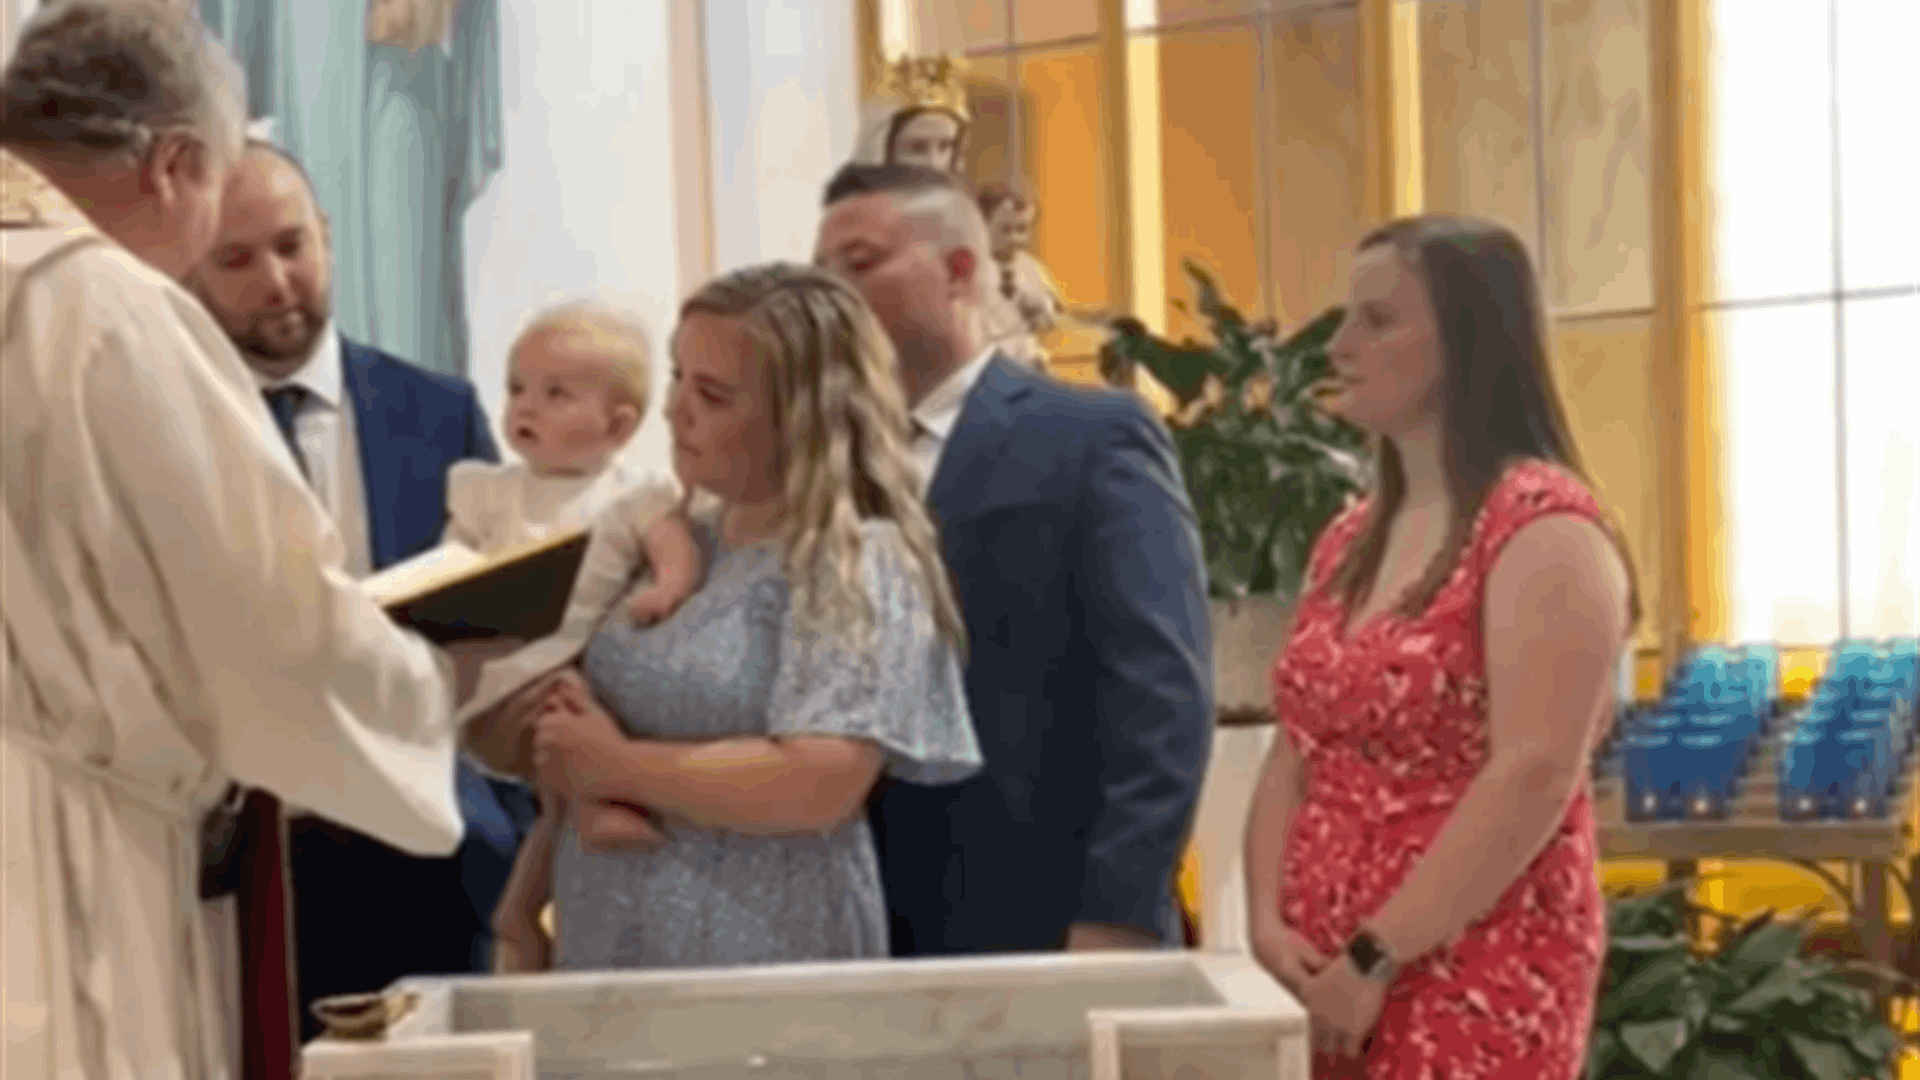 طفل يثير دهشة الحاضرين... أسقط الكتاب المقدس في المياه أثناء معموديته! (فيديو)